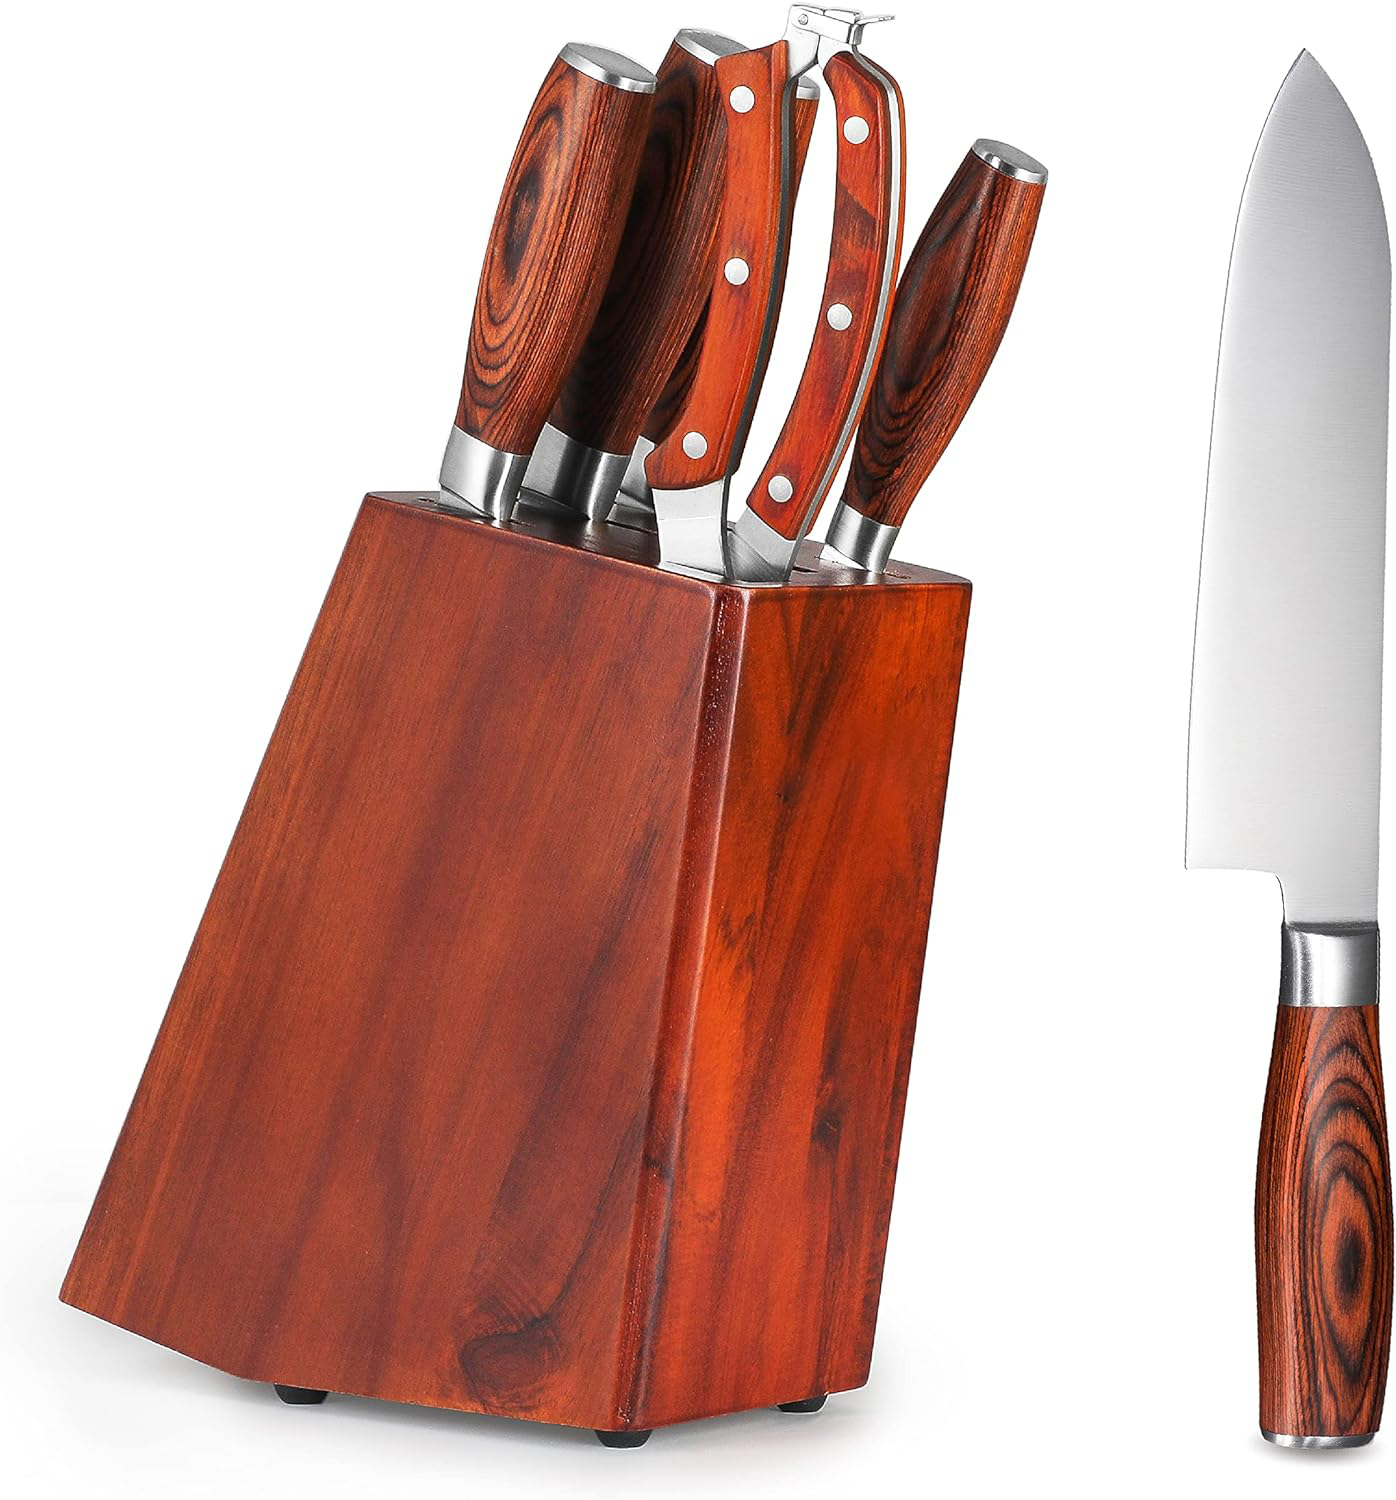 6 Piece Kitchen Knife Set, Knife Set with Block, Kitchen Knives Including Cleaver, Santoku Knife, Bread Knife, Paring Knife & Heavy-Duty Poultry Shears